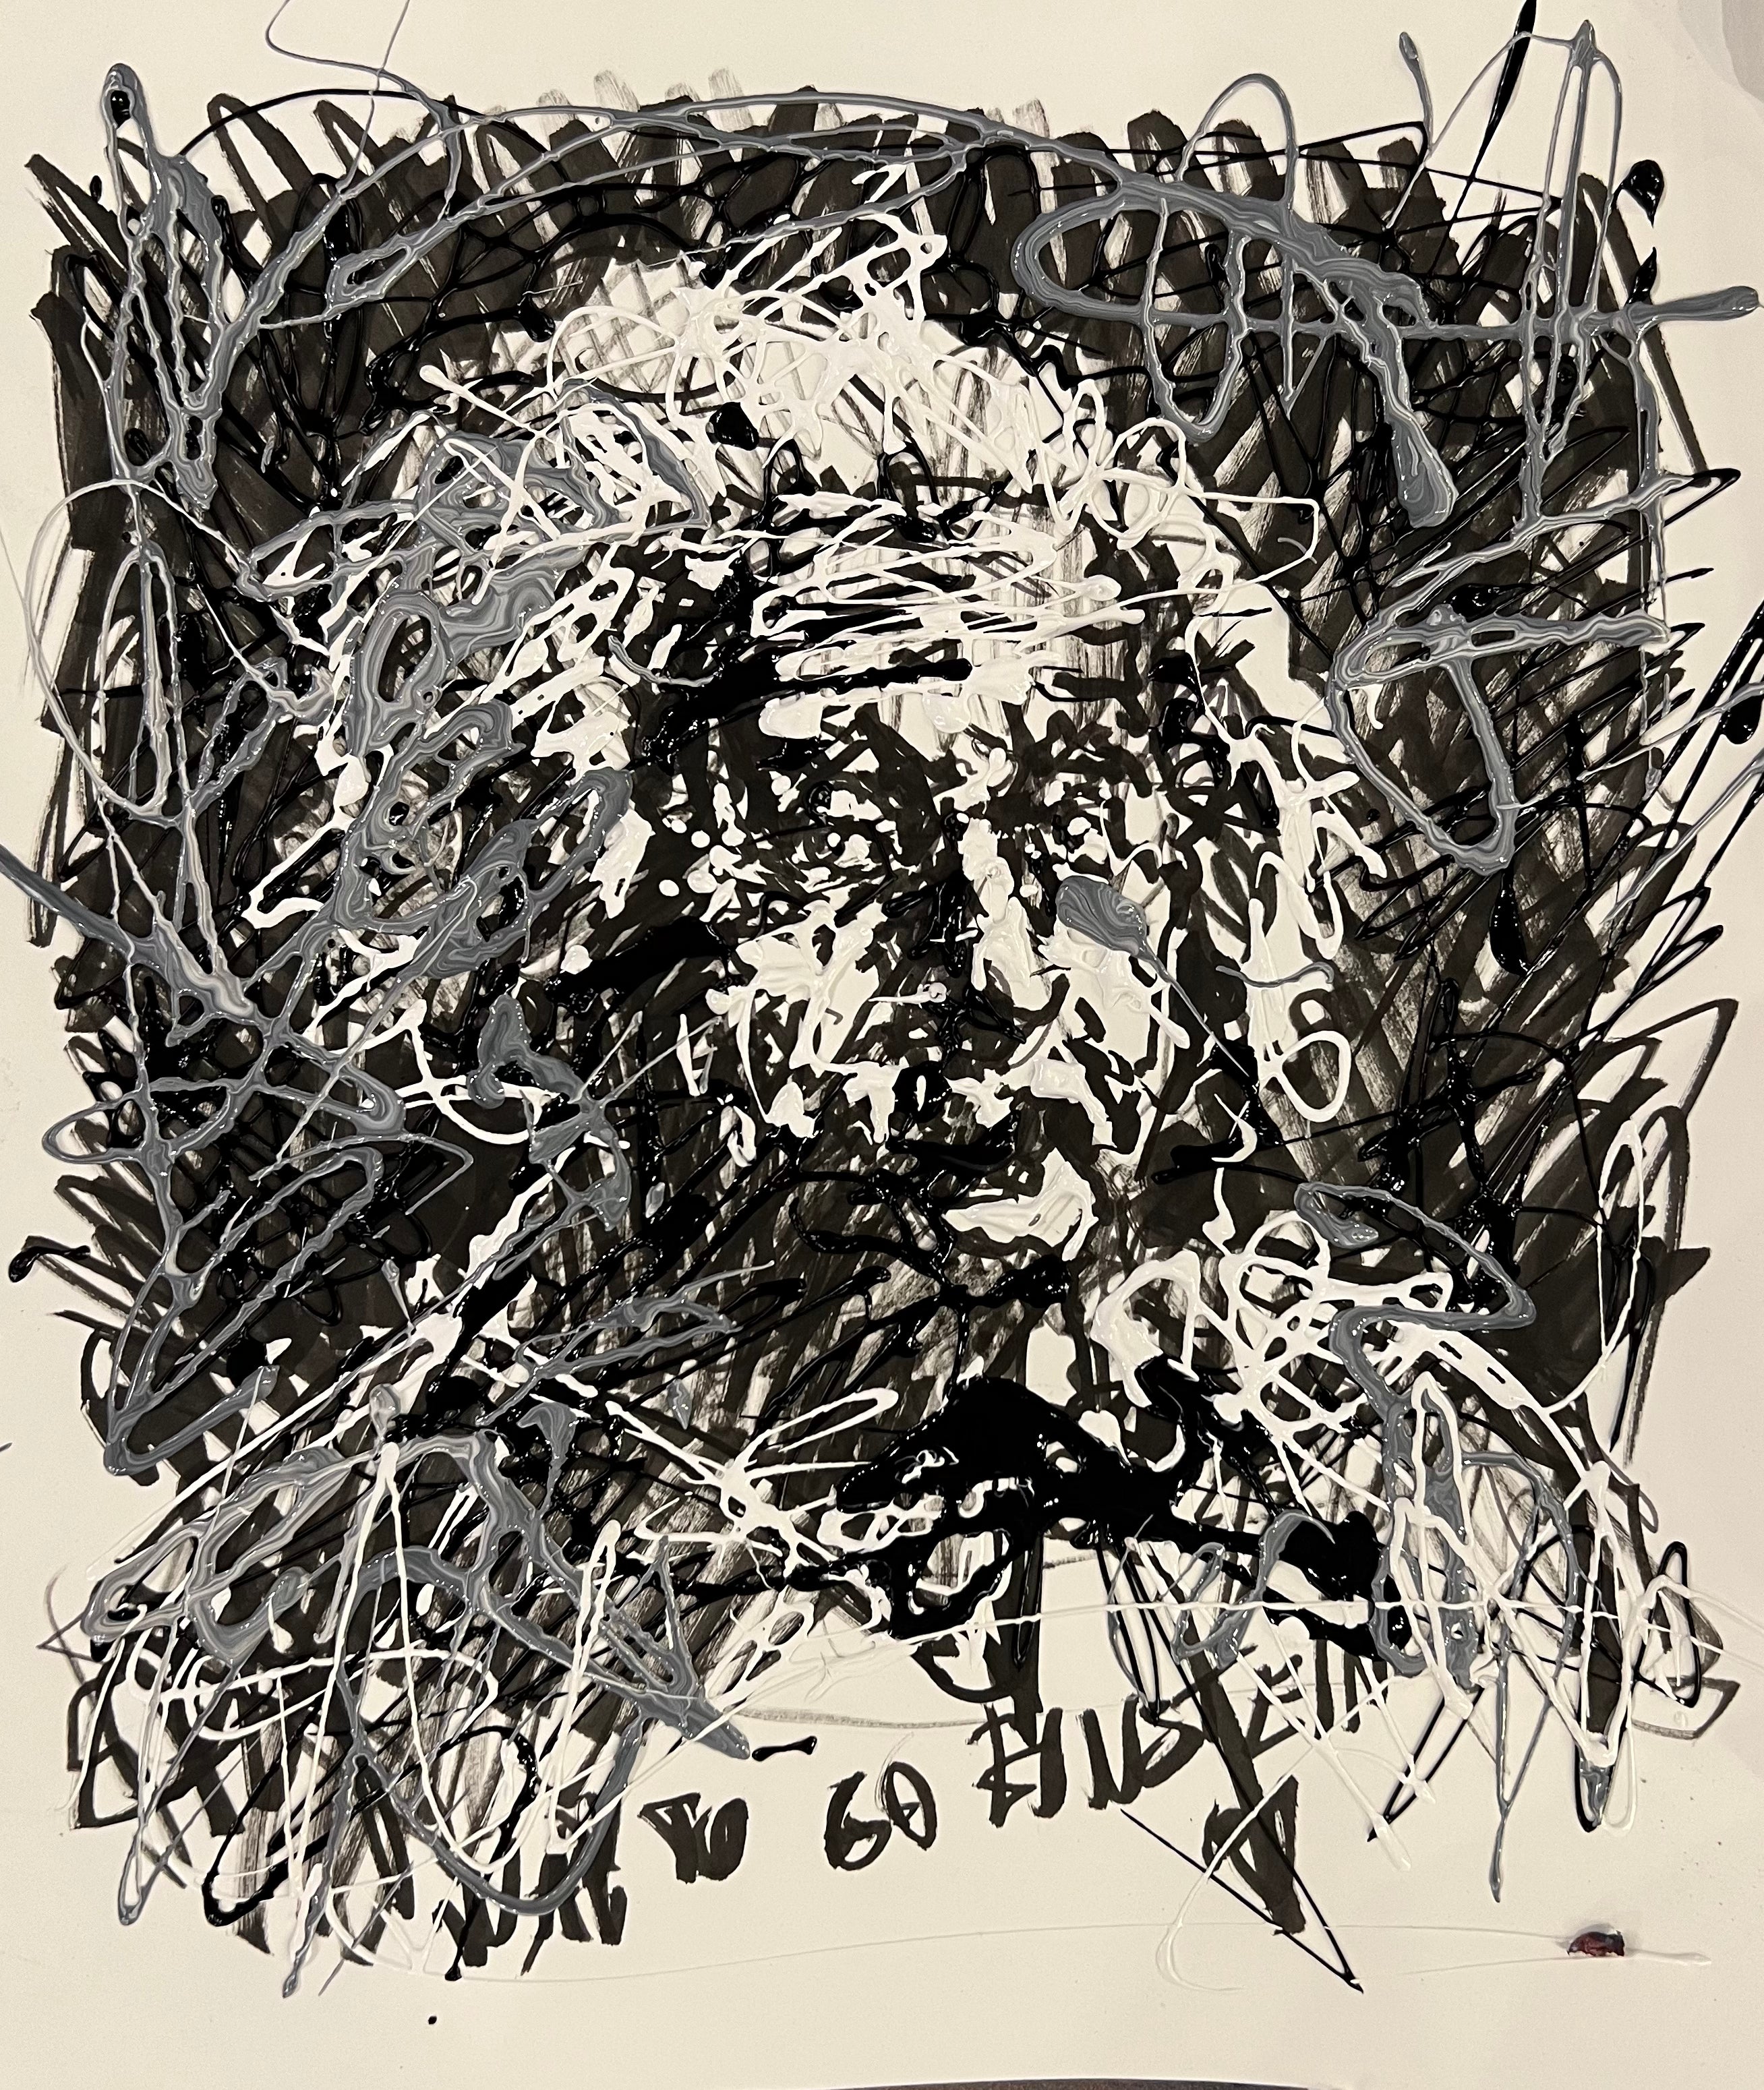 BW Einstein on paper